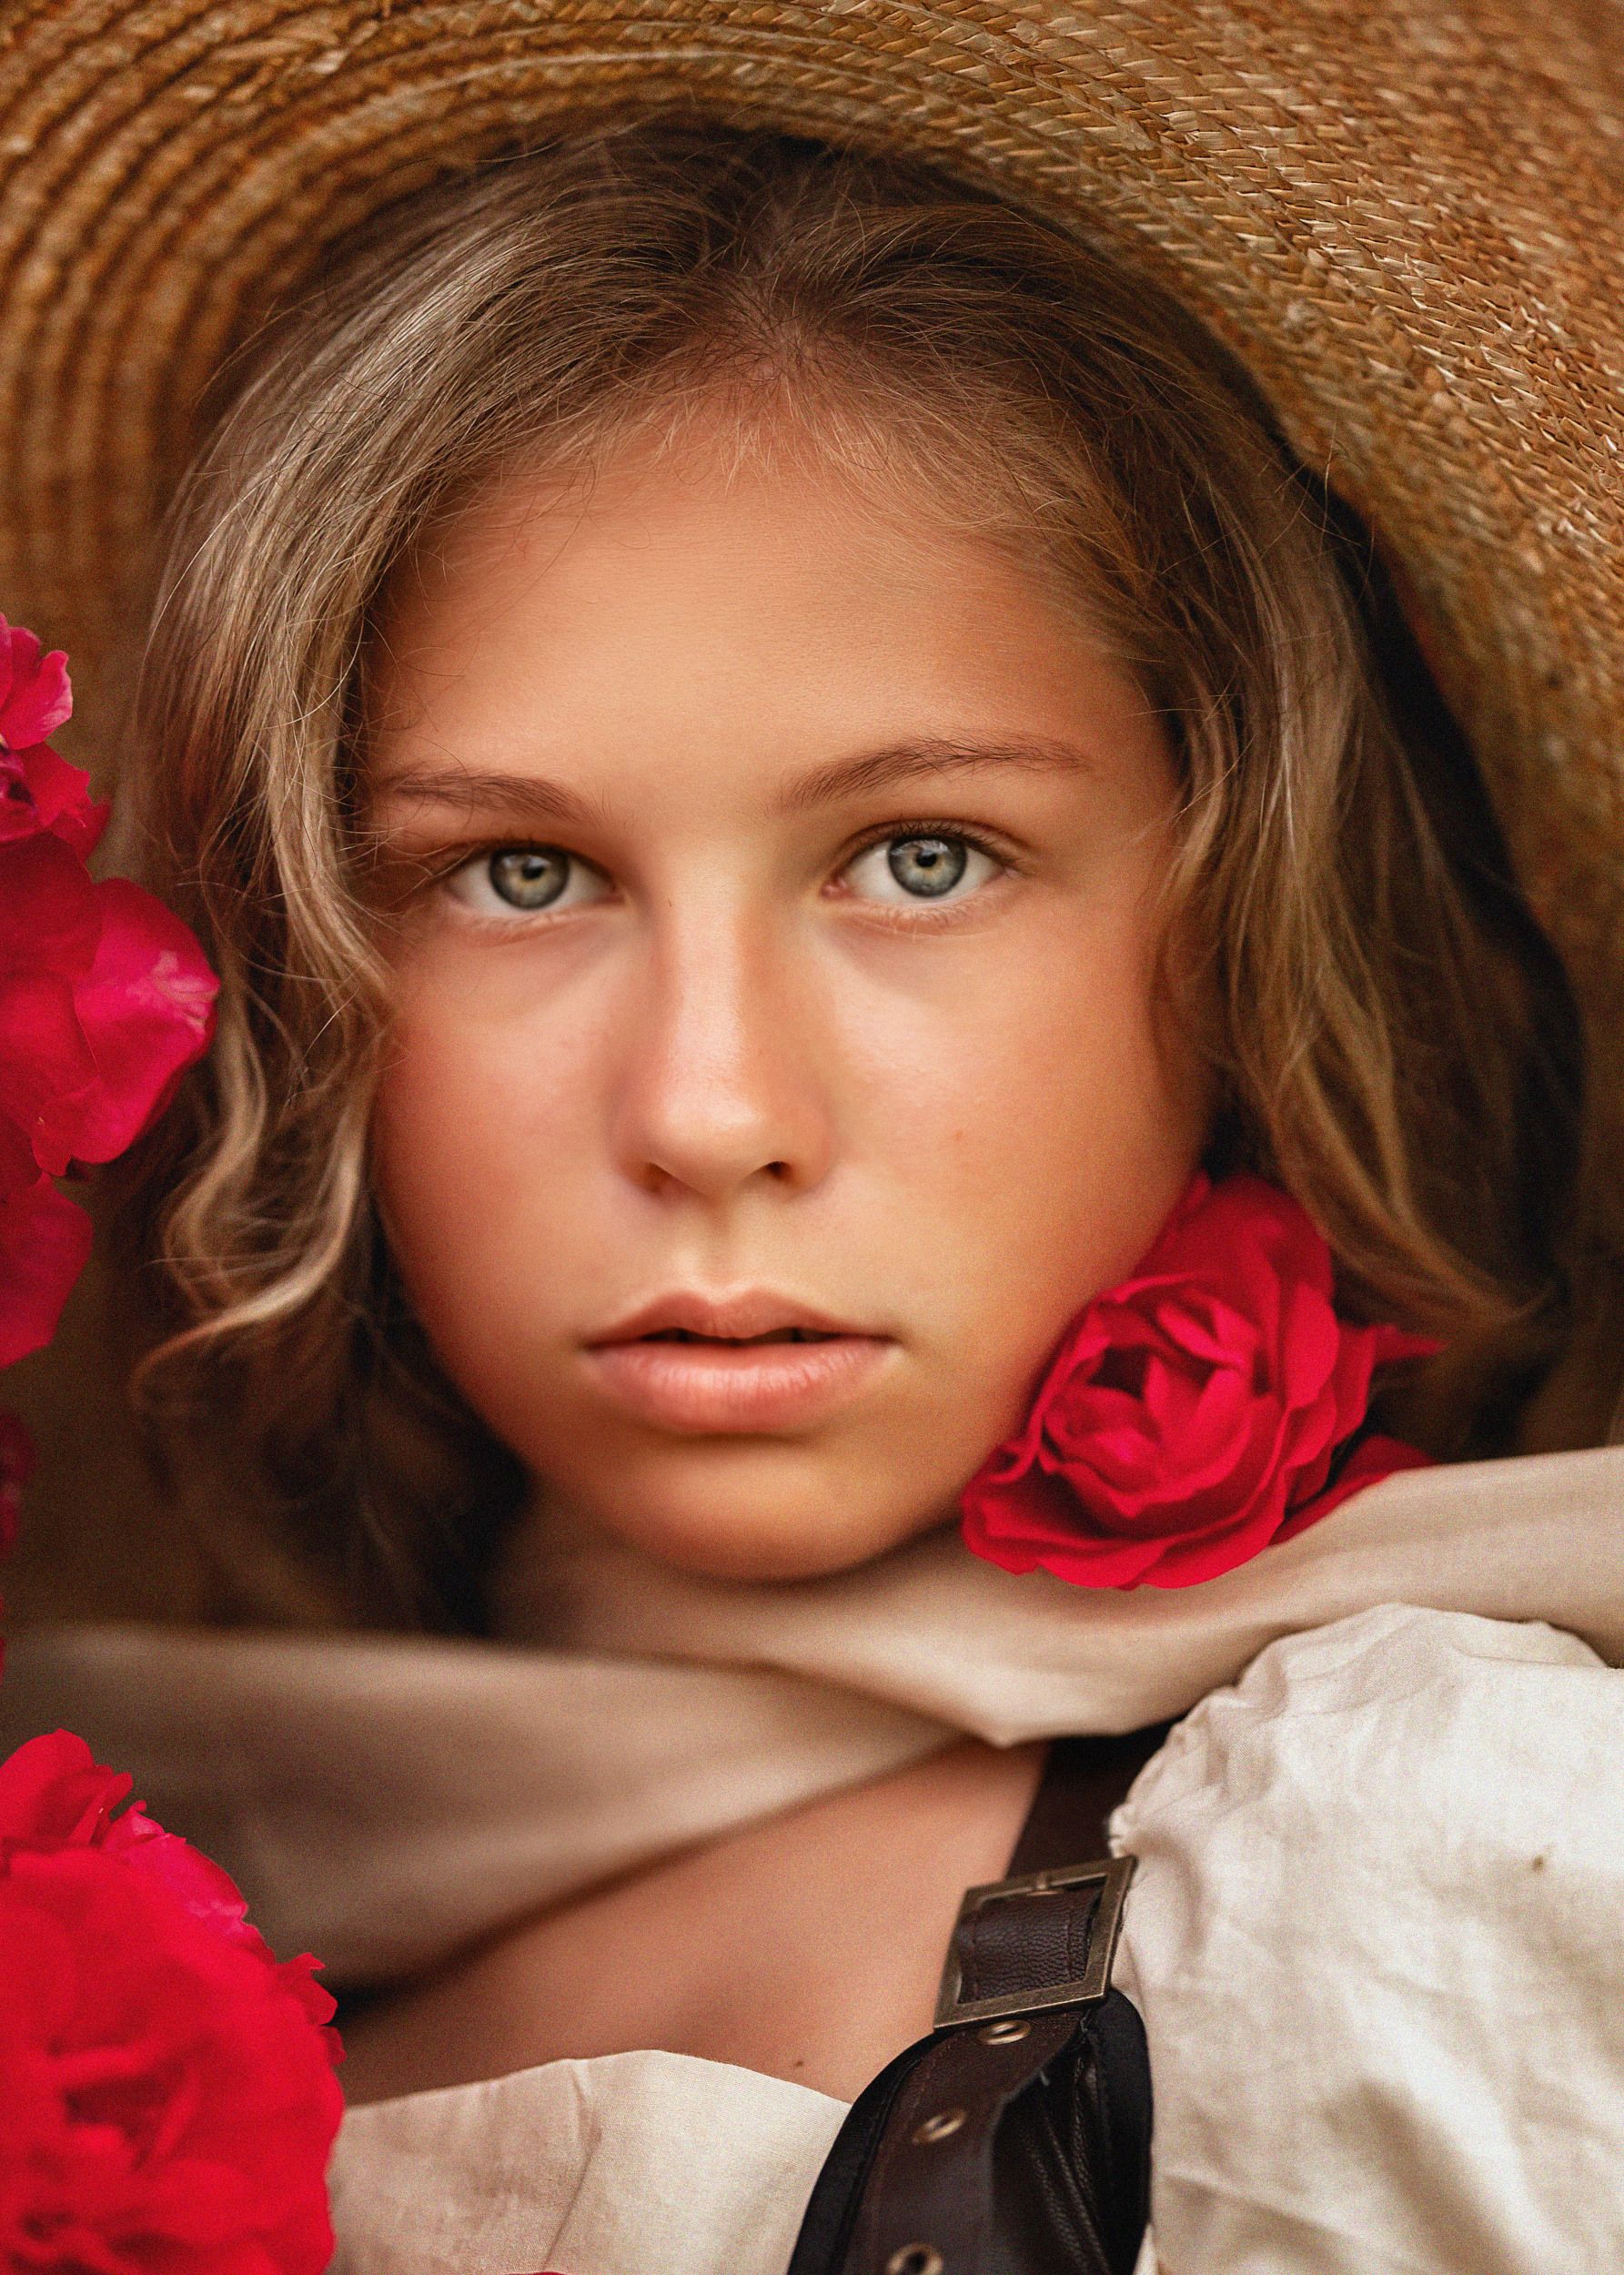 девушка, лето, поле, девушка в шляпе, юность, портрет, розы, Елена Чернигина